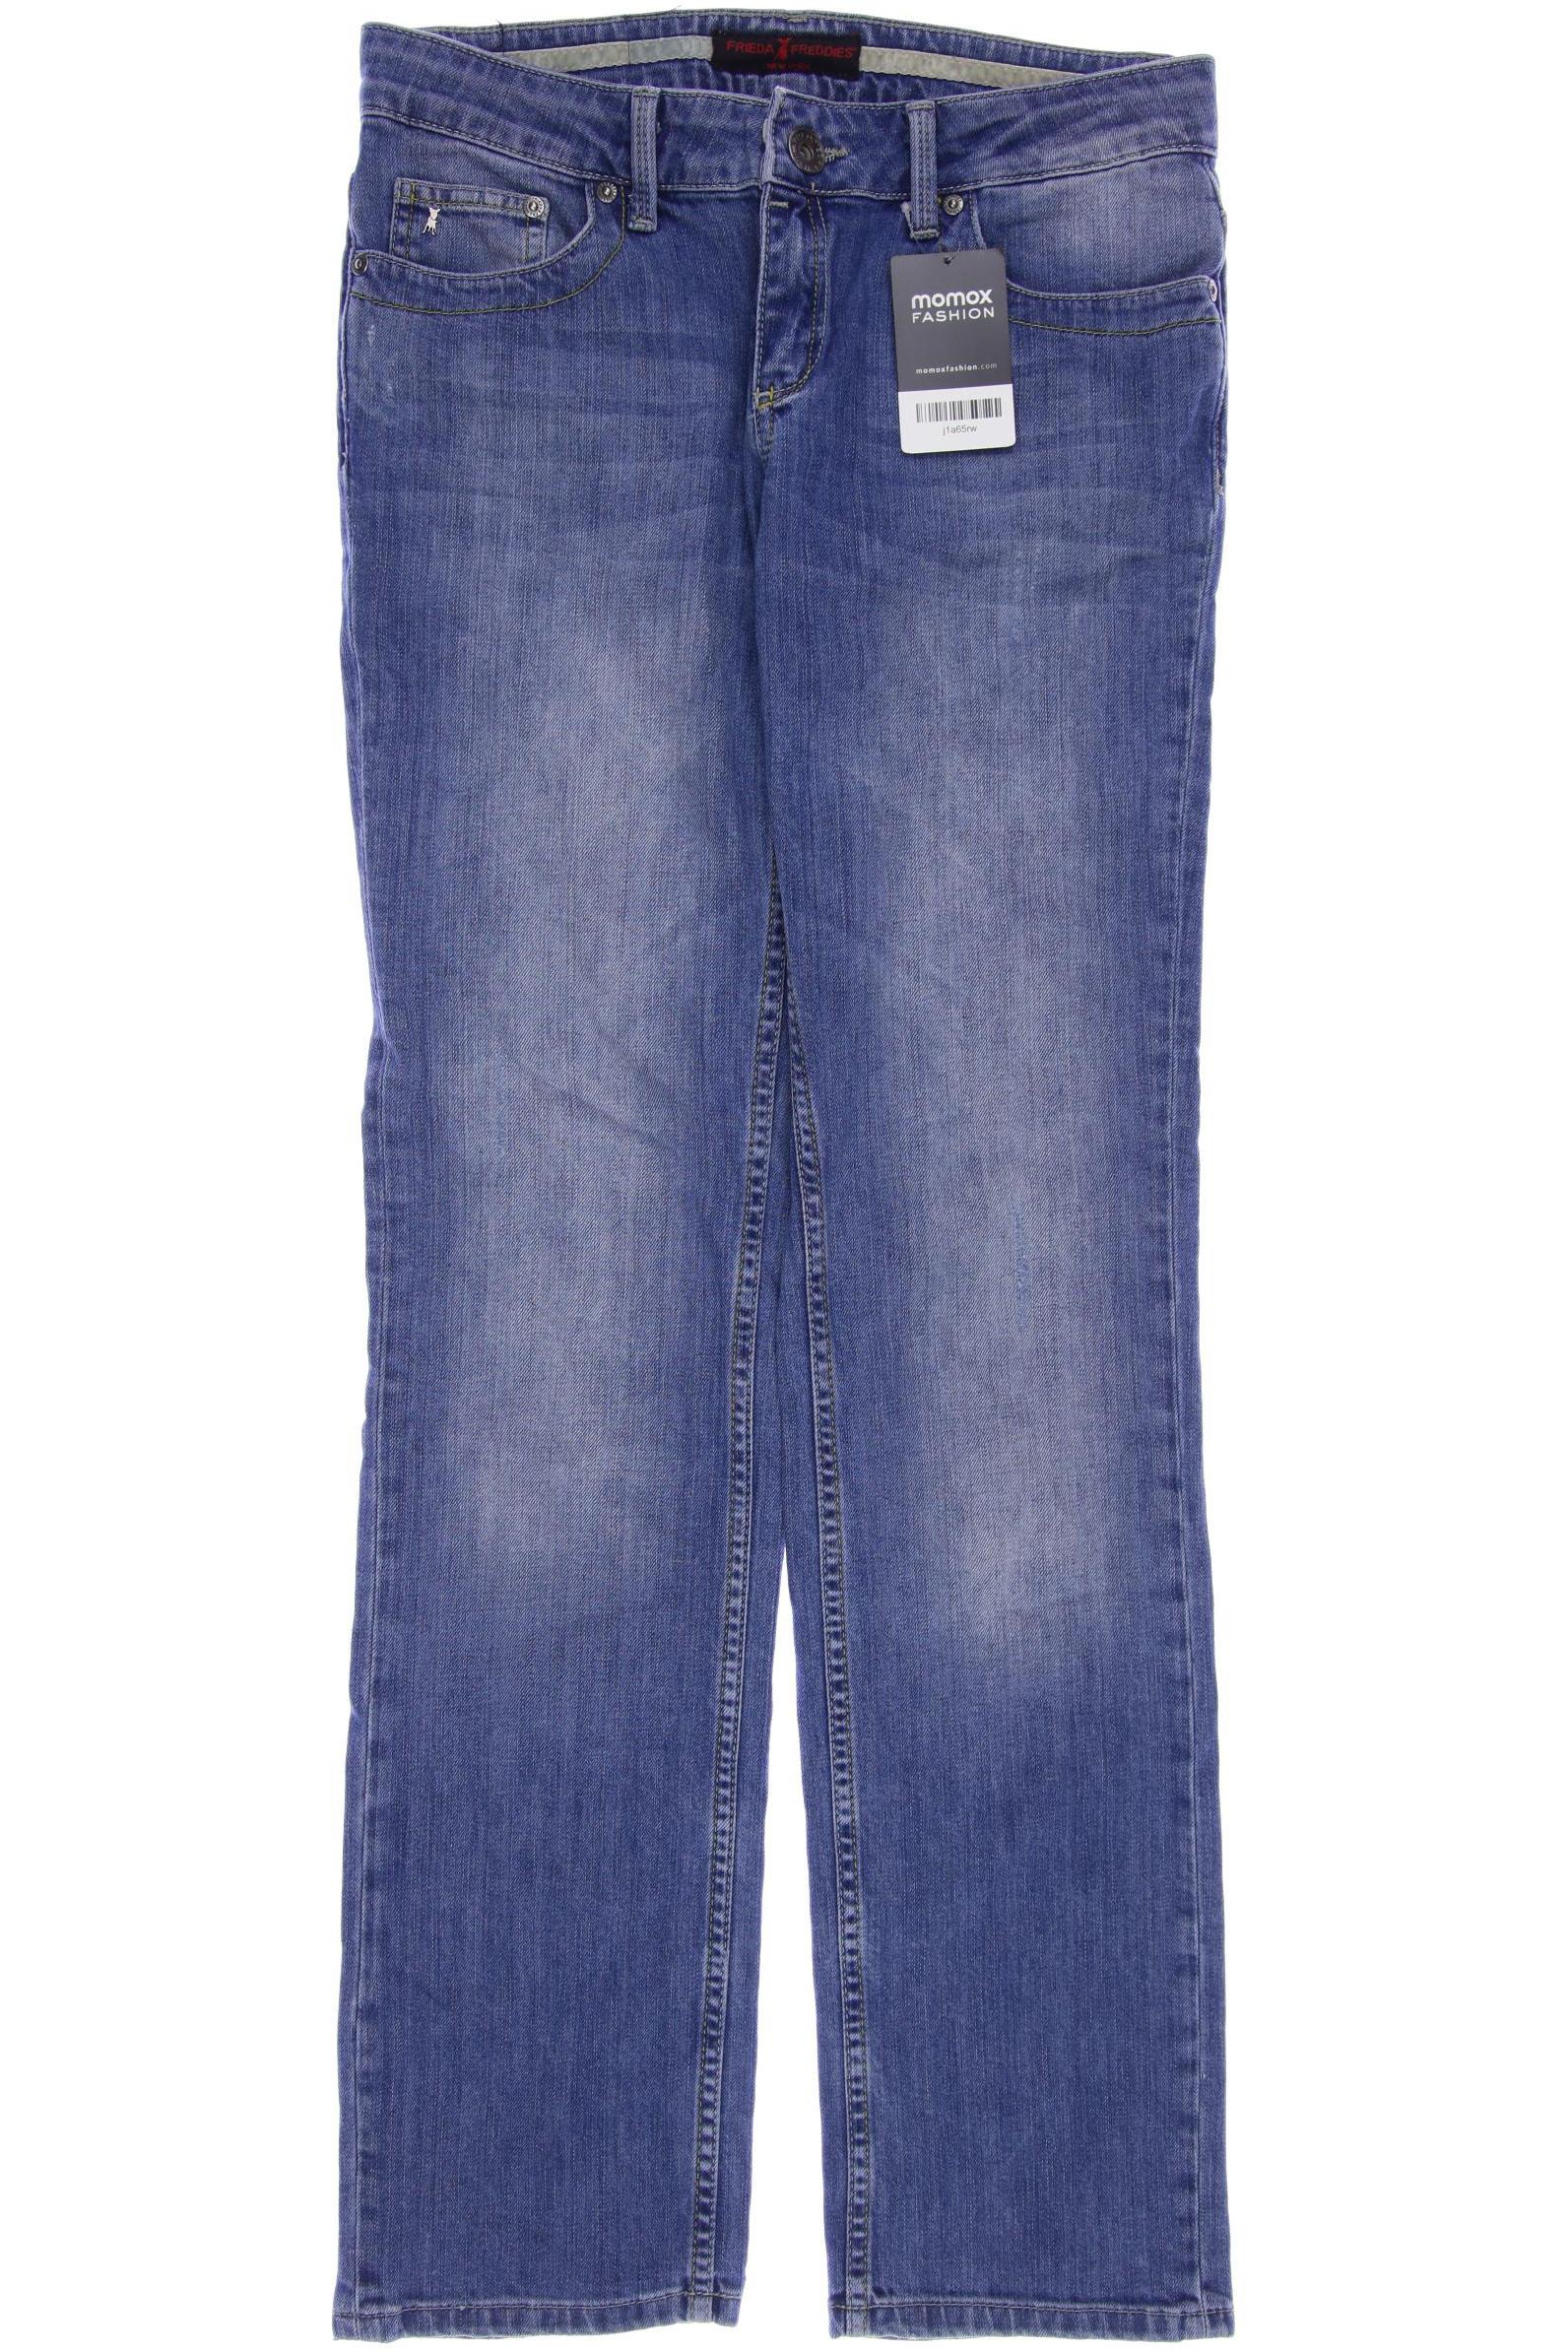 Friedafreddies Damen Jeans, blau, Gr. 38 von FRIEDAFREDDIES